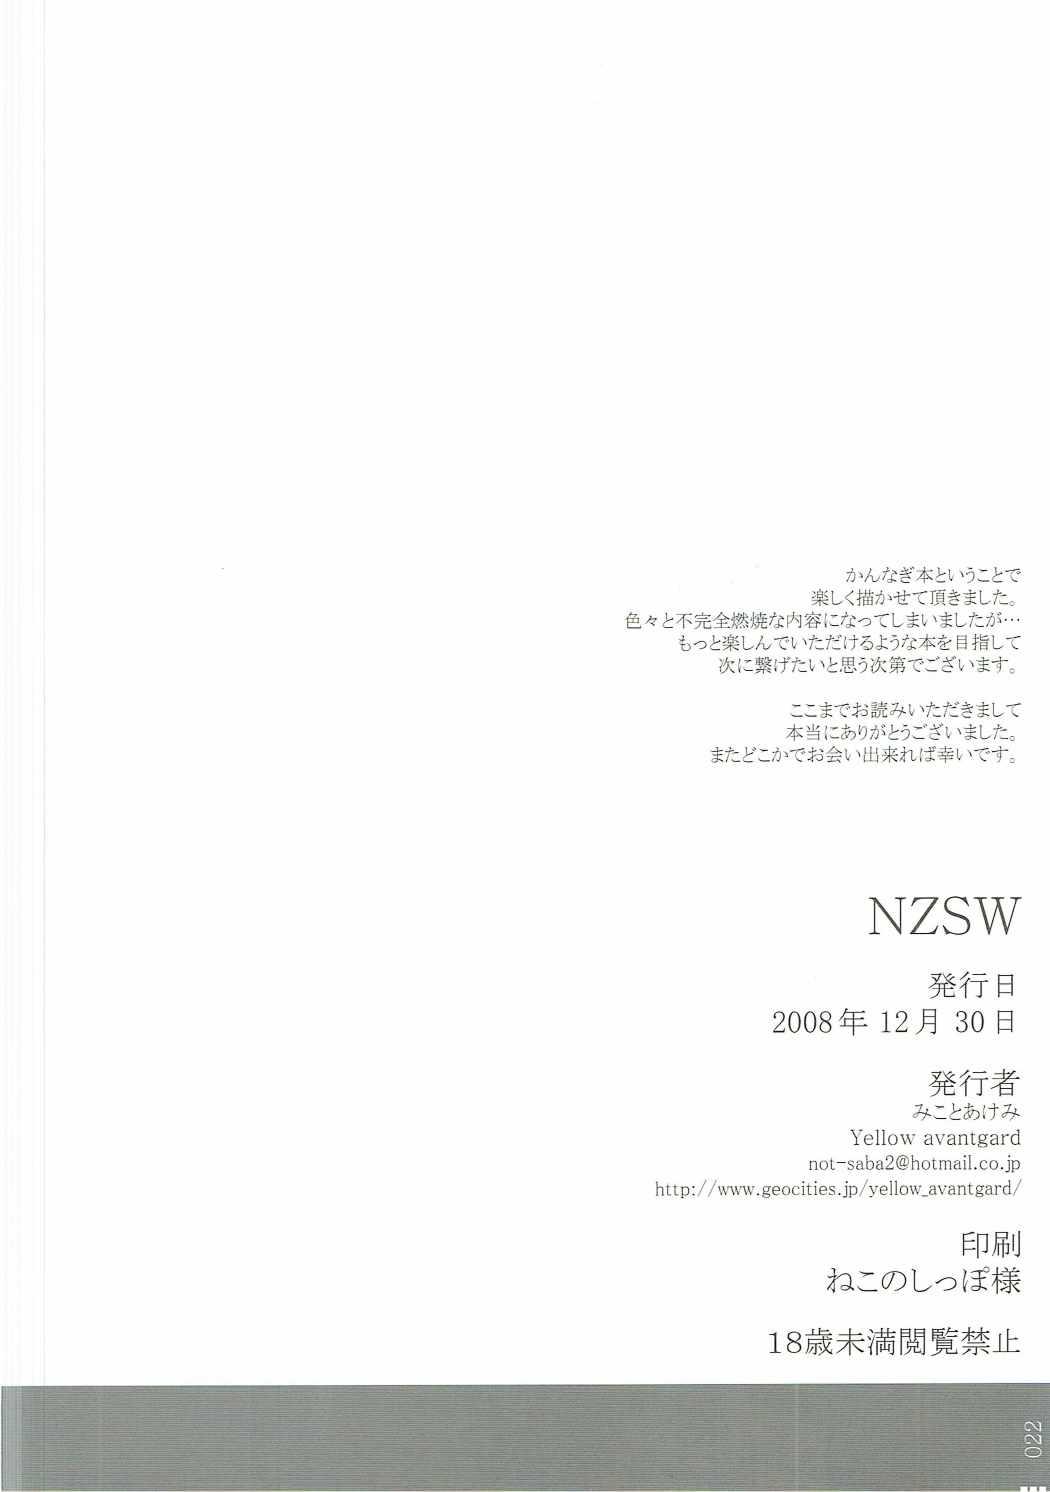 NZSW 20